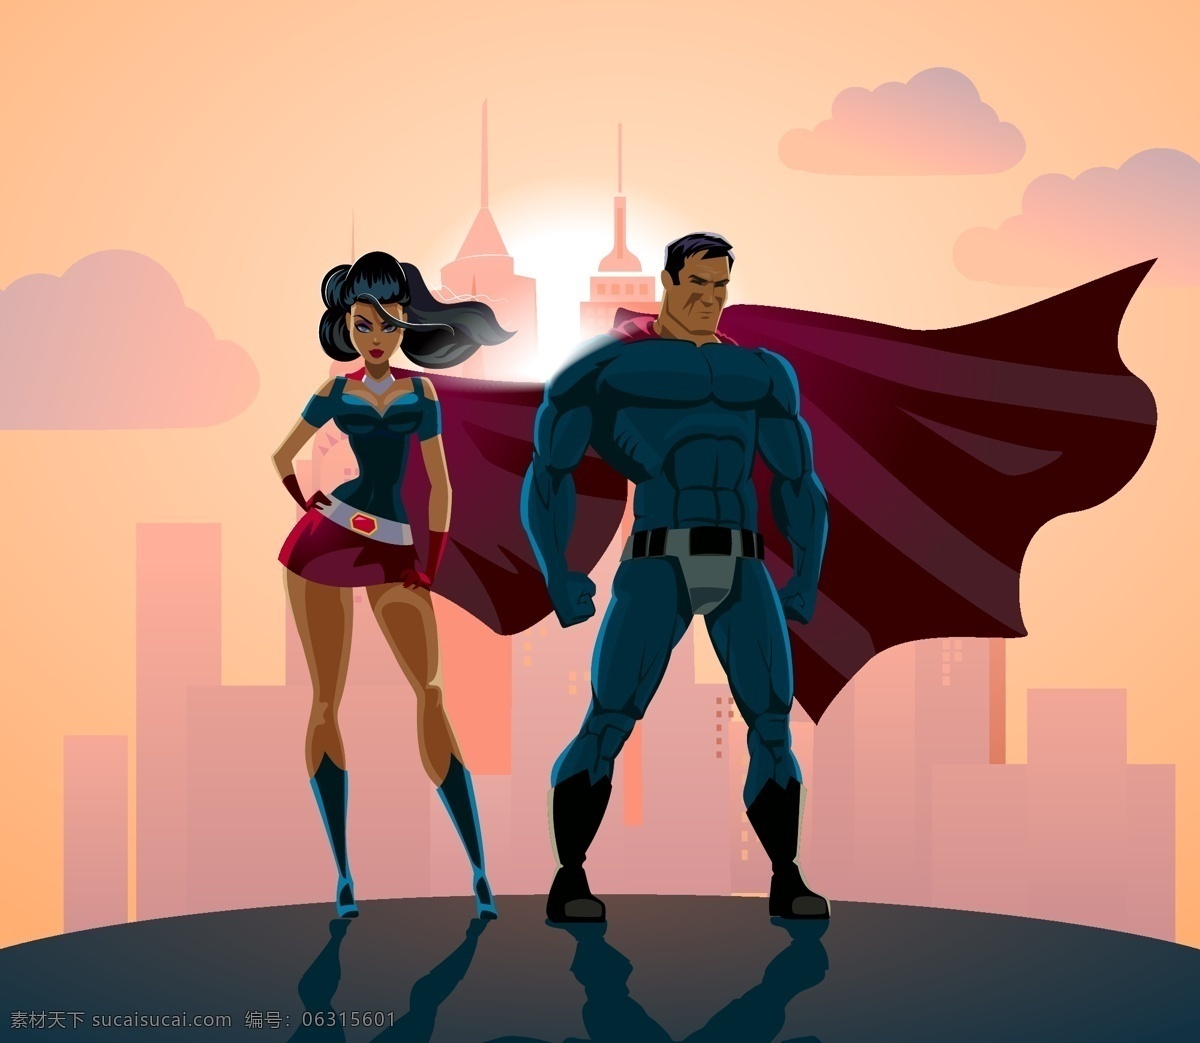 超级英雄人物 超级英雄 英雄人物 卡通超级英雄 卡通英雄人物 超人 女超人 超人矢量 女超人矢量 共享设计矢量 人物图库